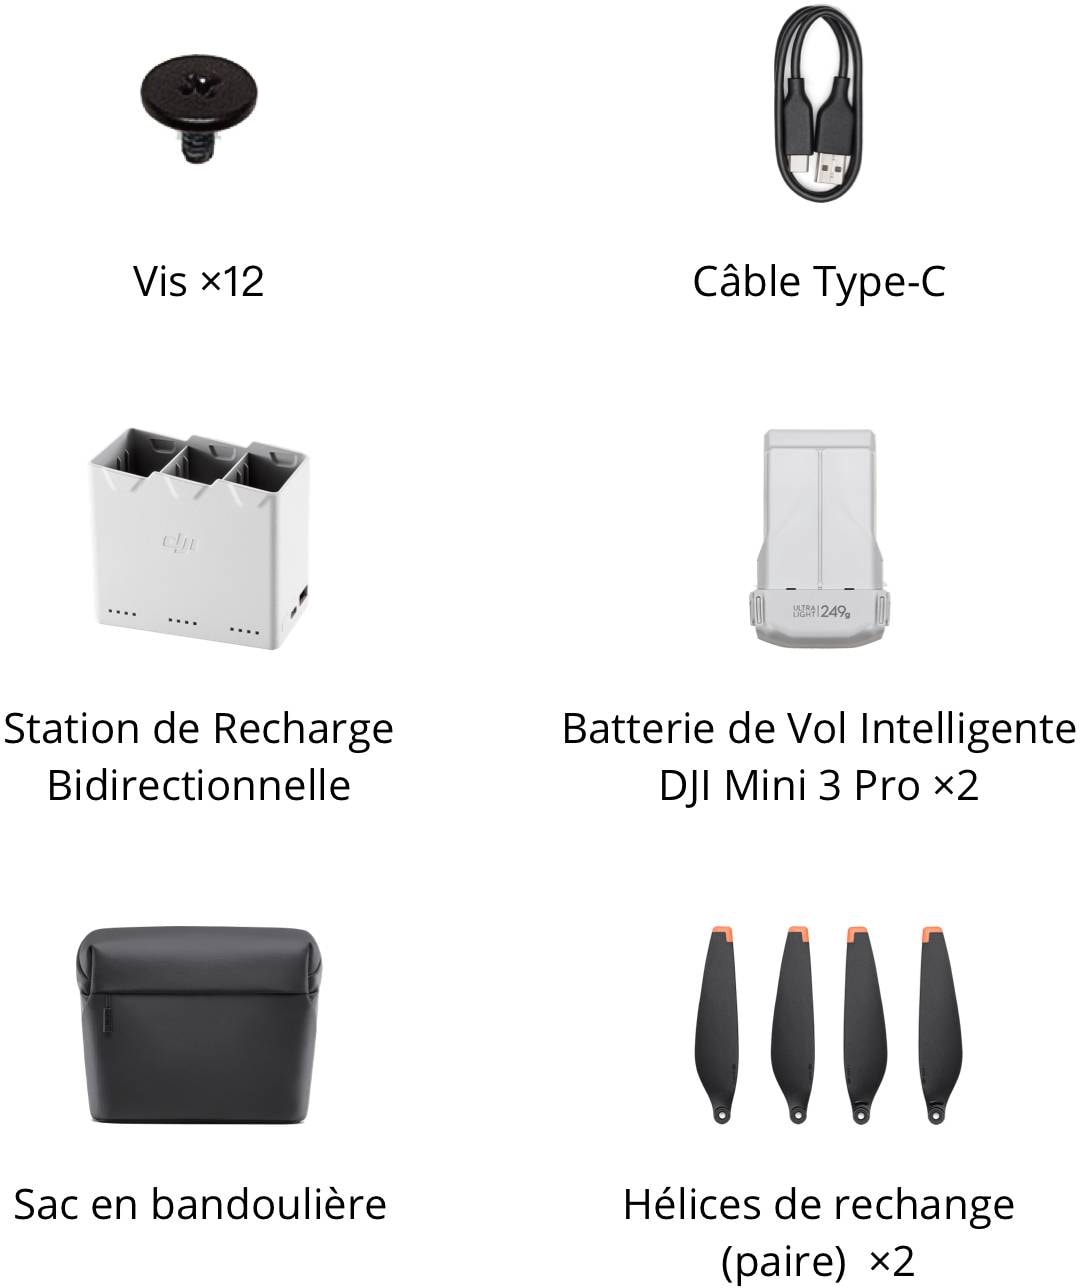 Fly More Kit pour DJI Mini 3 Pro